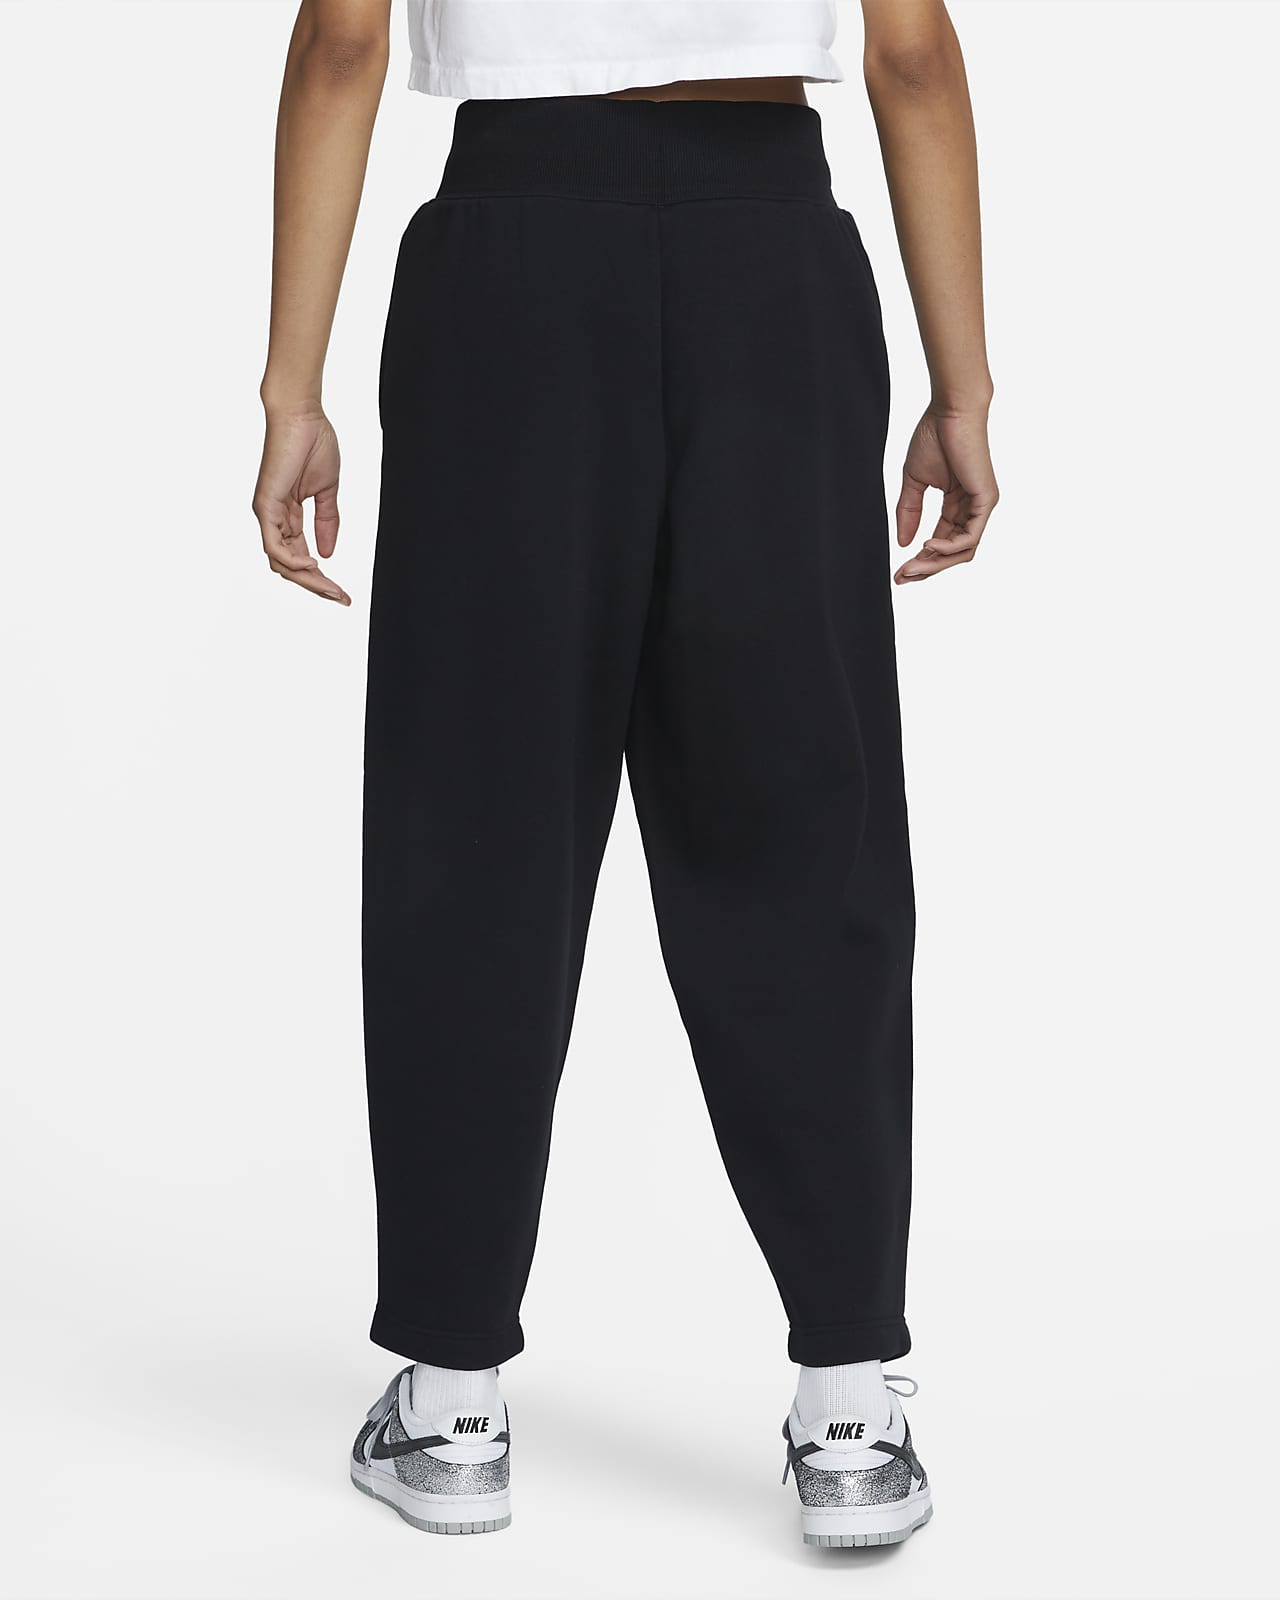 Nike Sportswear Phoenix Fleece Women's High-Waisted Cropped Sweatpants. Nike.com